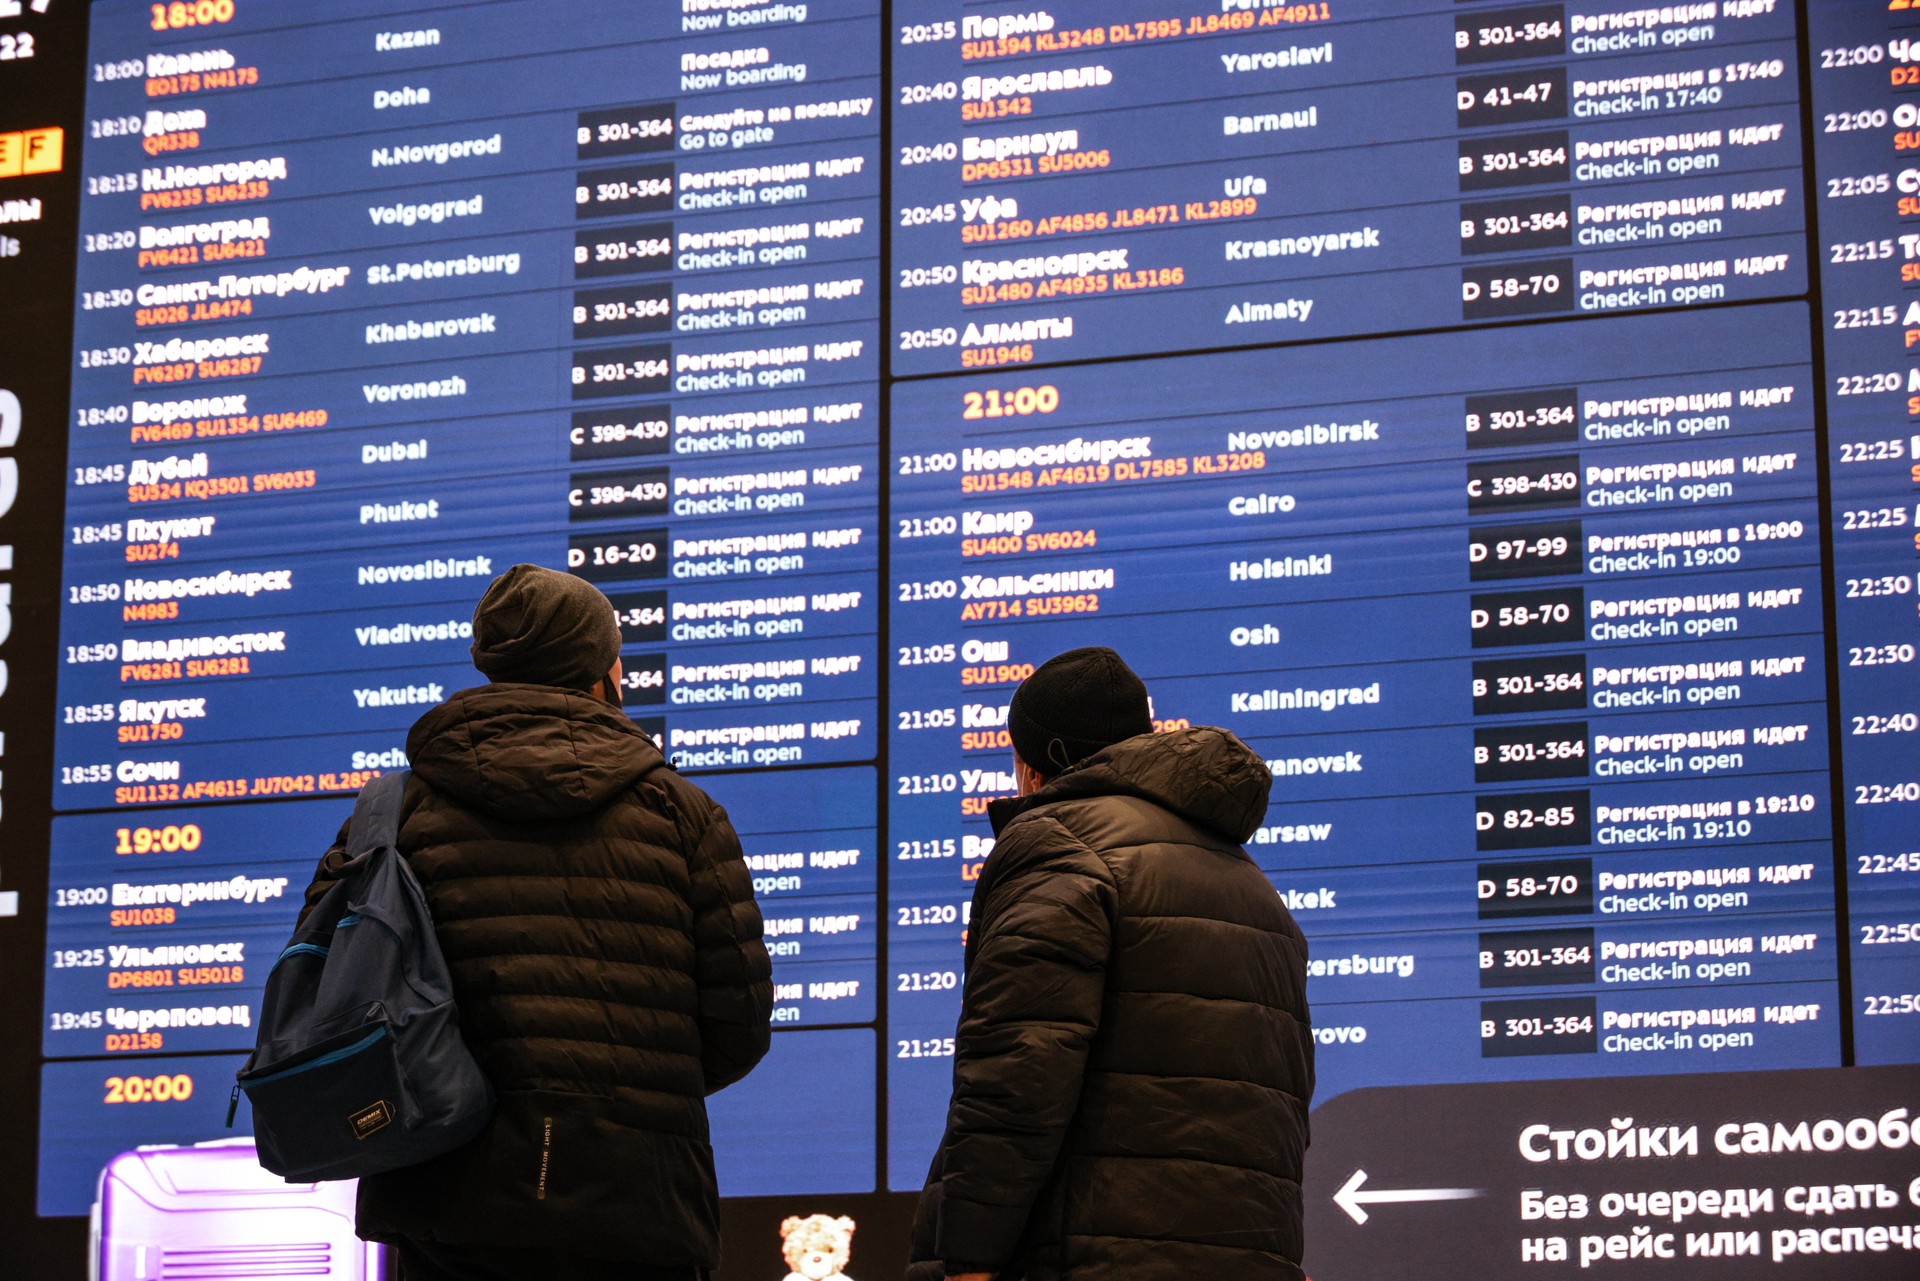 Аэропорт Краснодара технически готов к возобновлению работы